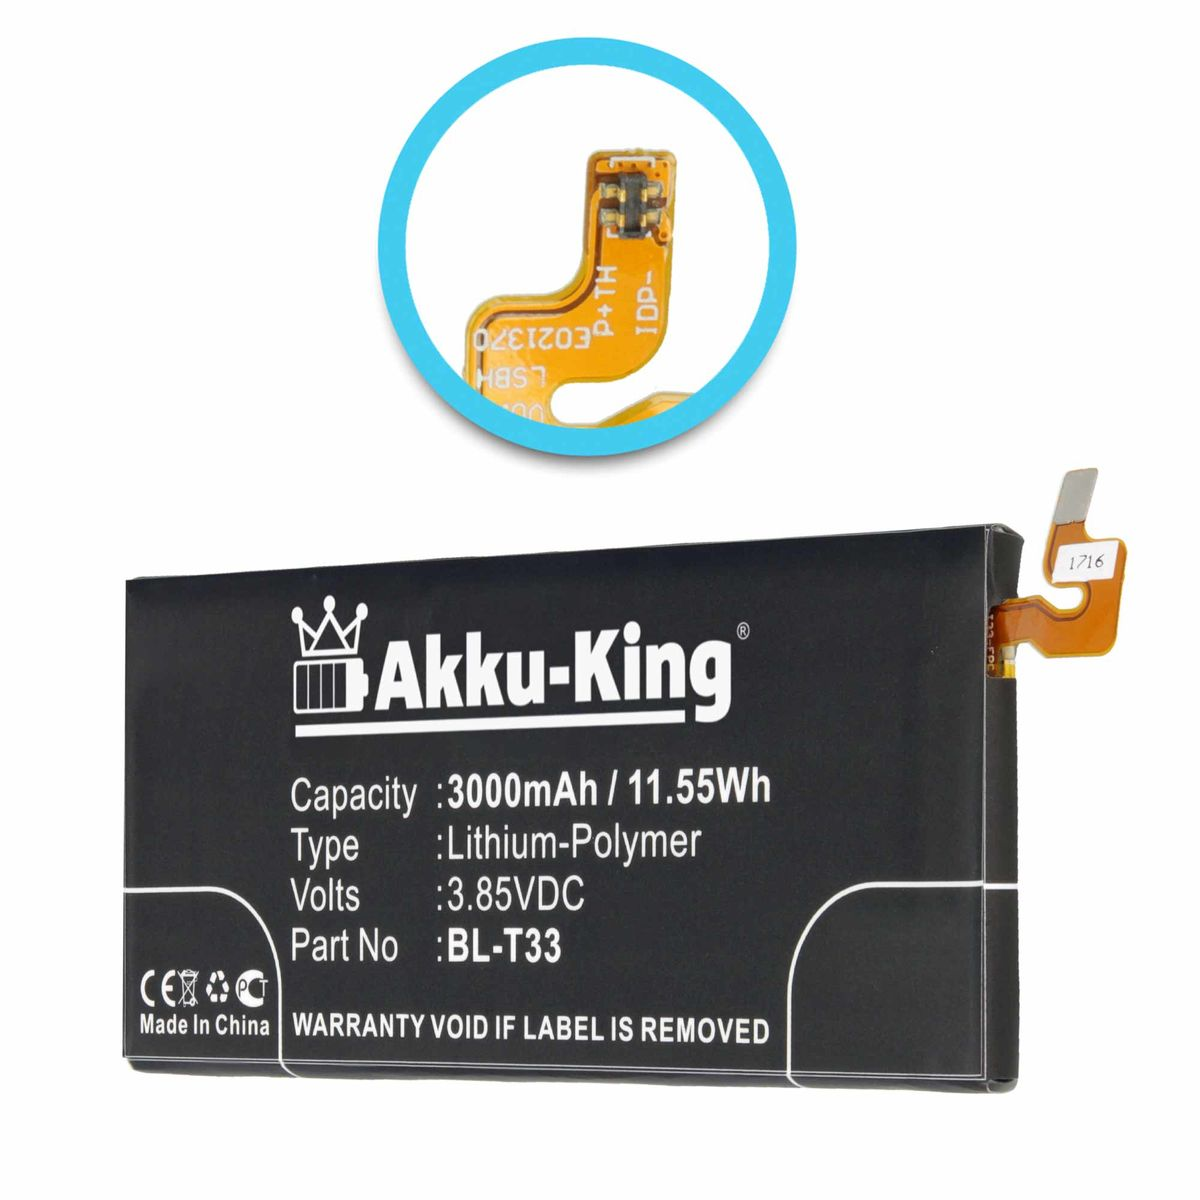 AKKU-KING Akku kompatibel mit Volt, Handy-Akku, Li-Polymer 3000mAh BL-T33 LG 3.85